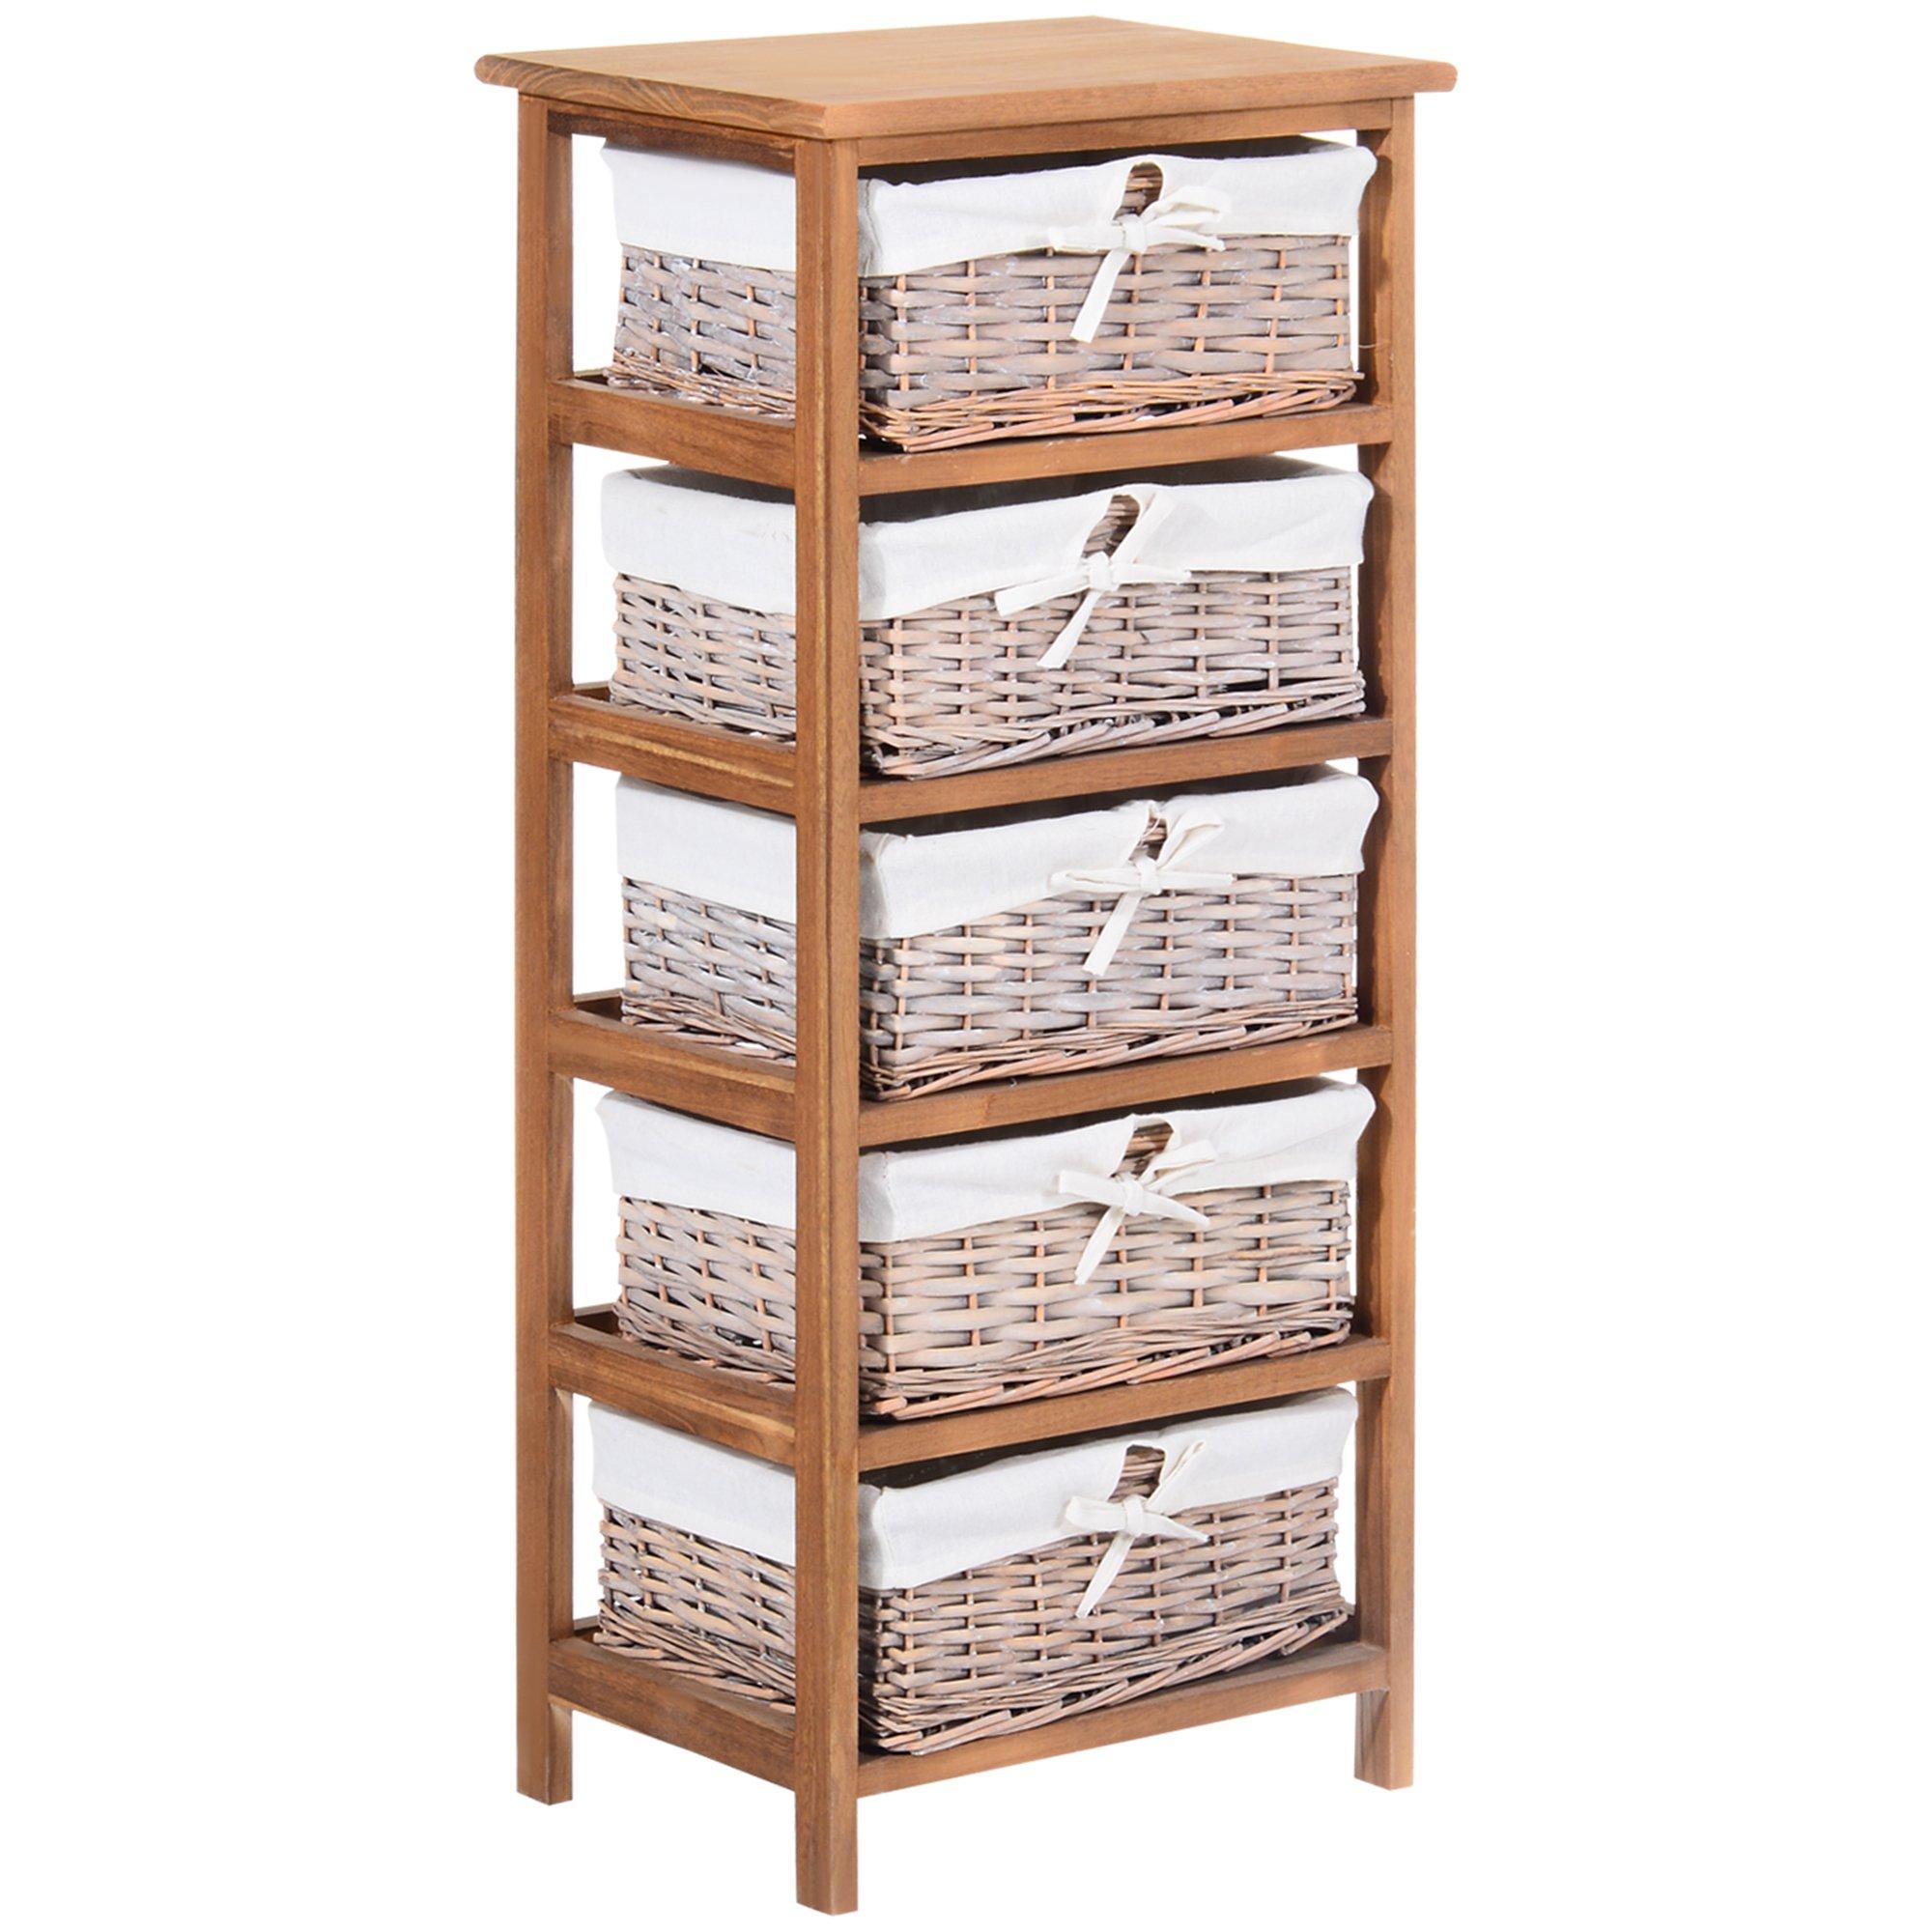 5 Drawer Dresser Wicker Storage Shelf Unit Wooden Home Organization